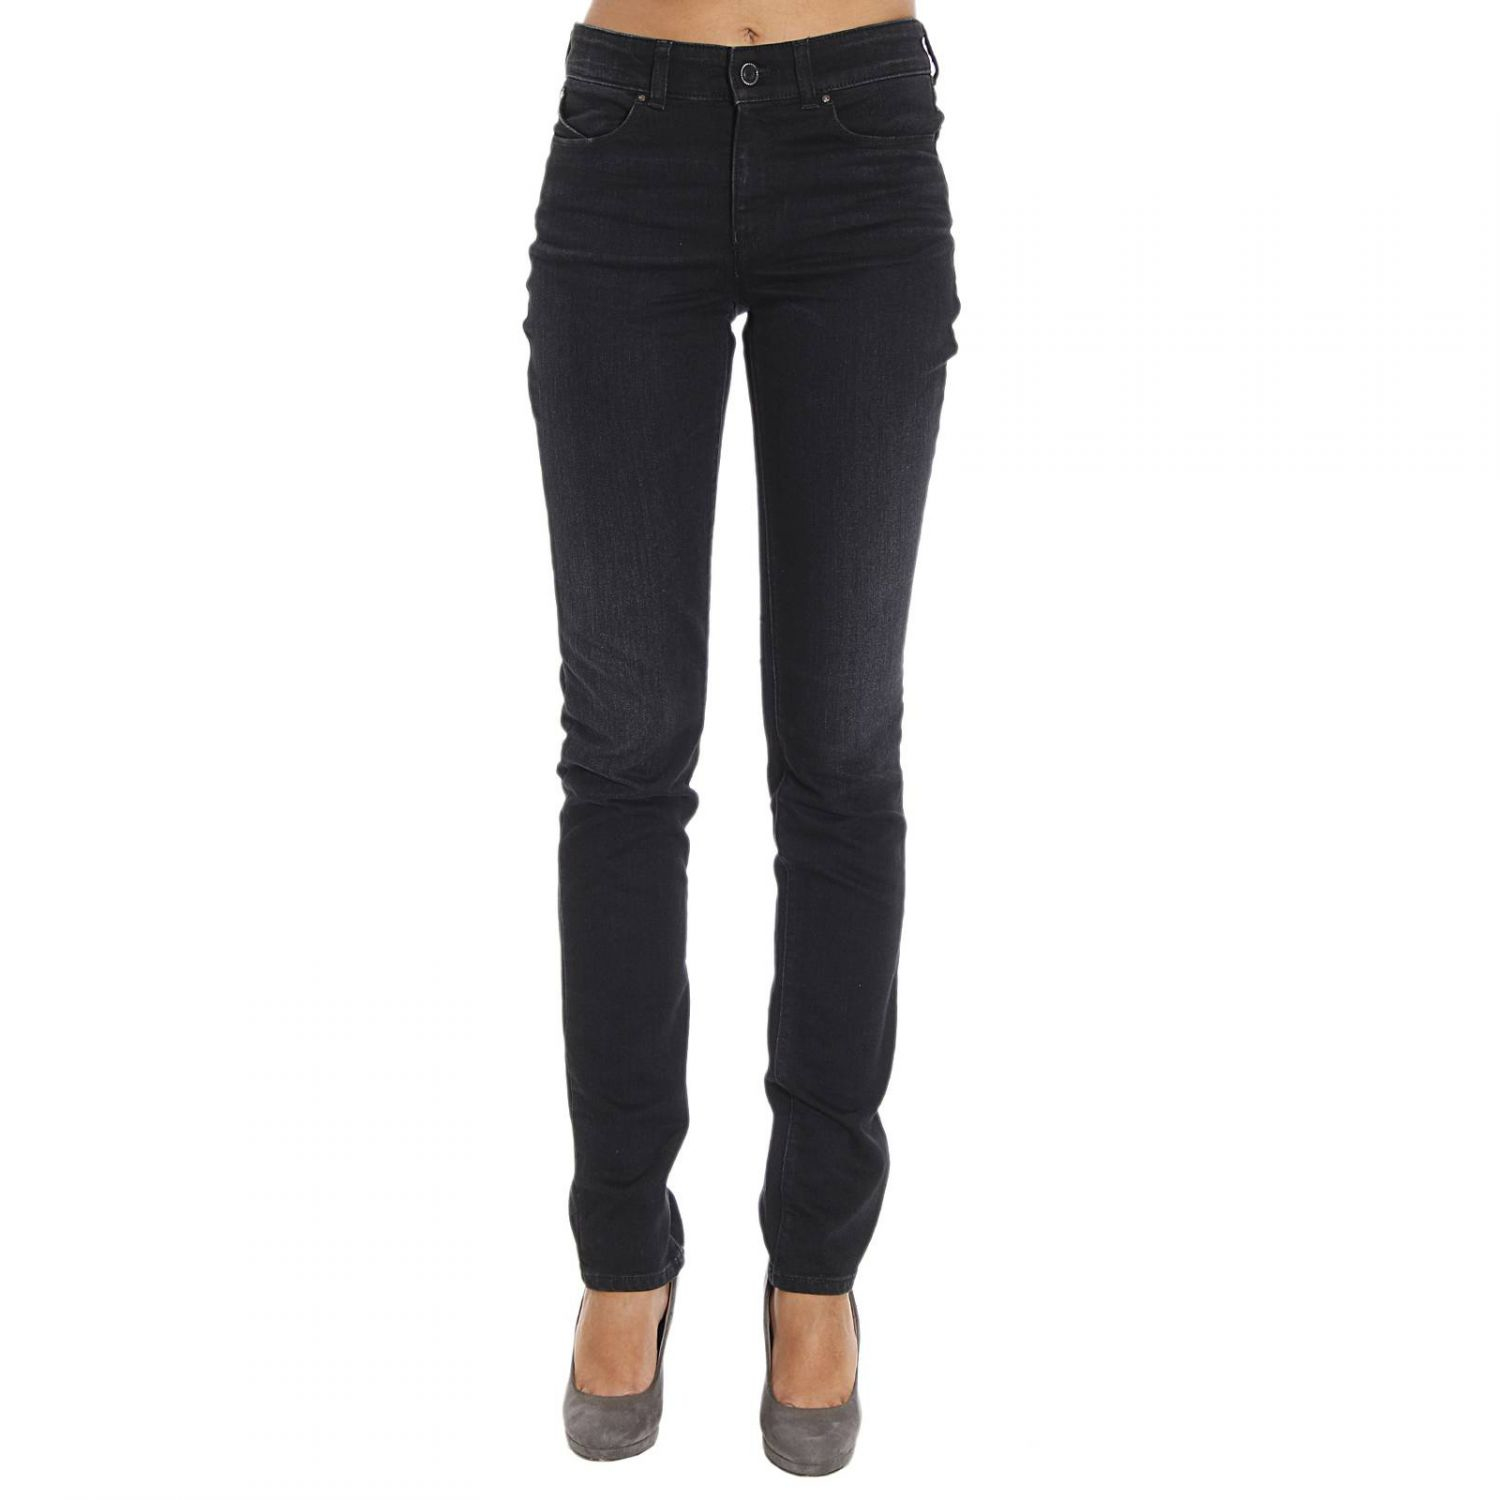 Giorgio armani Jeans Woman in Black | Lyst